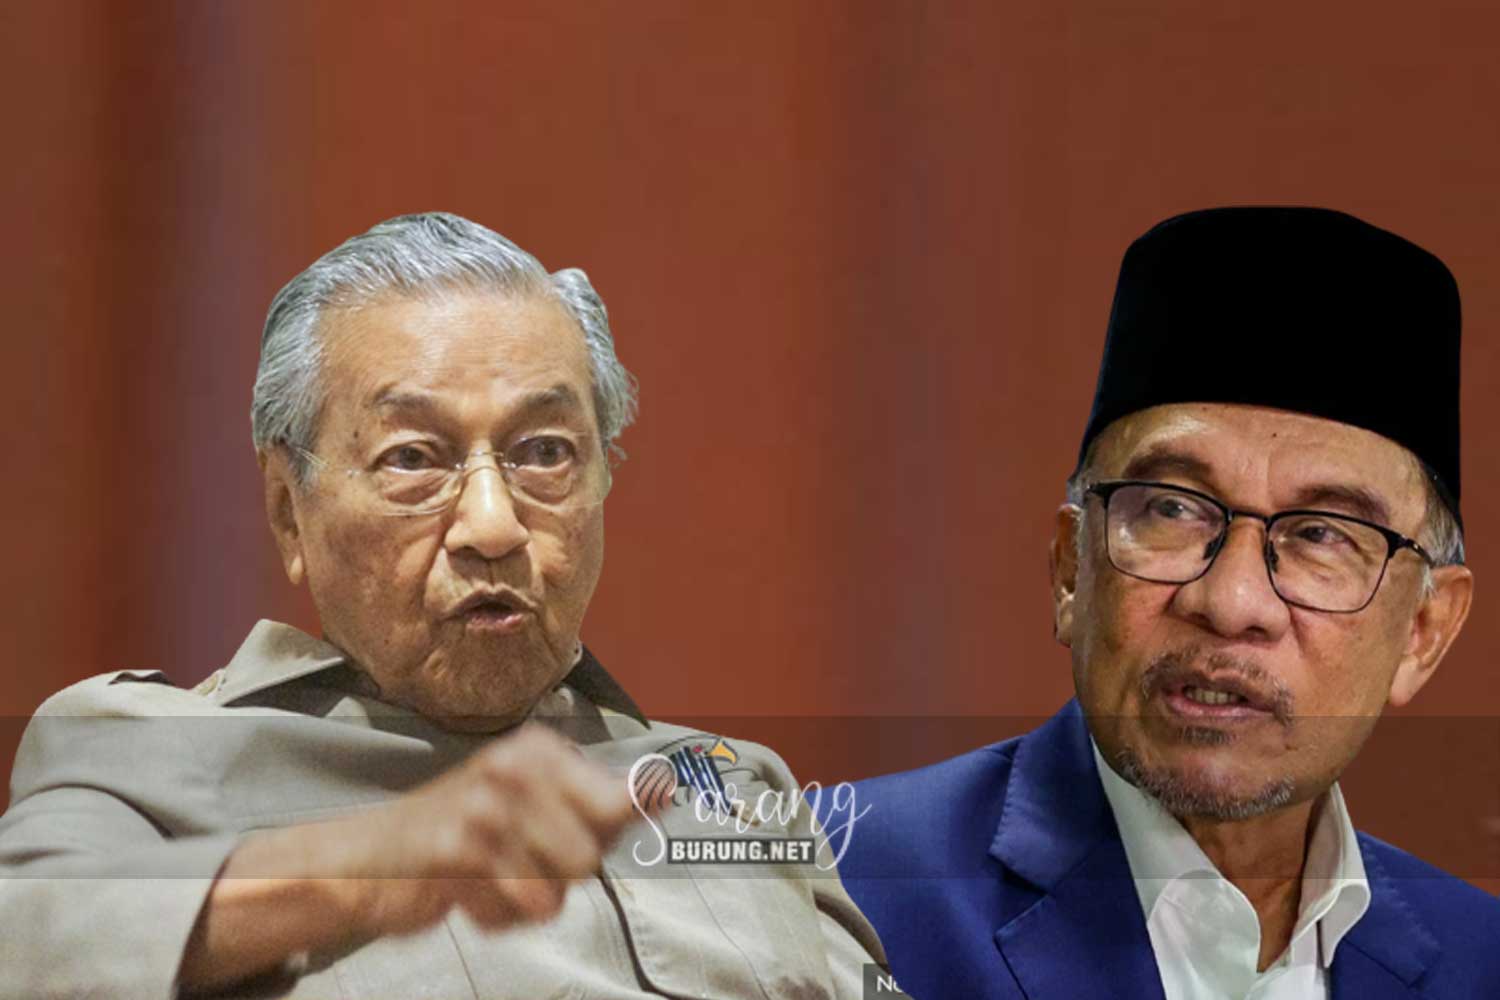 Dituduh bolot kekayaan diri dan keluarga, Tun M cabar Anwar tunjuk bukti